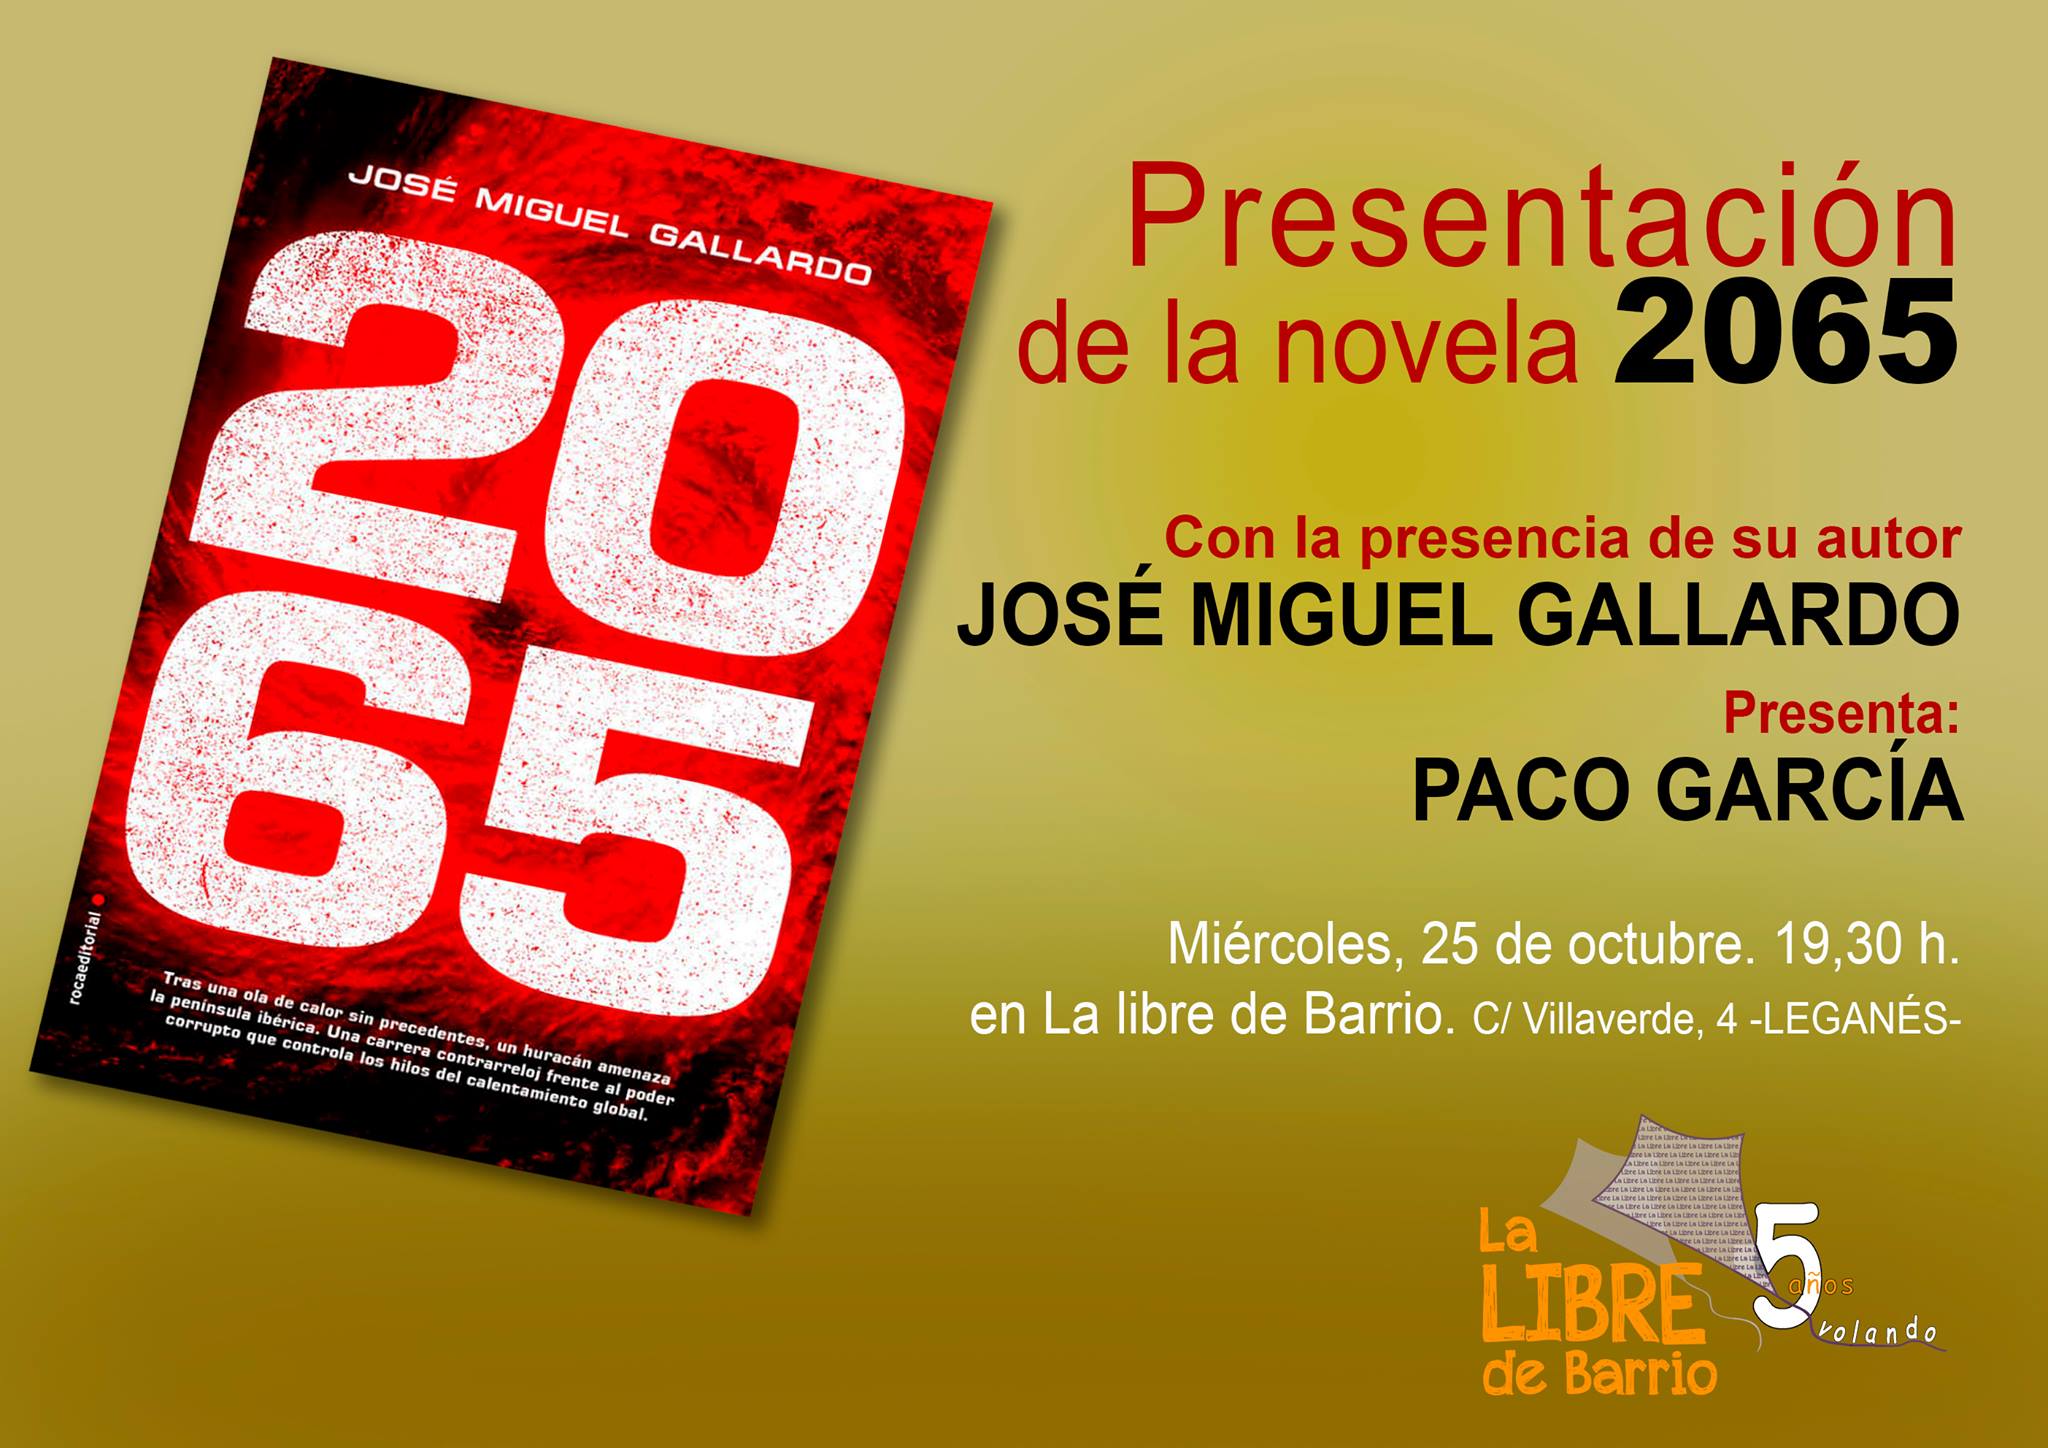 Presentación de la novela “2065” de José Miguel Gallardo